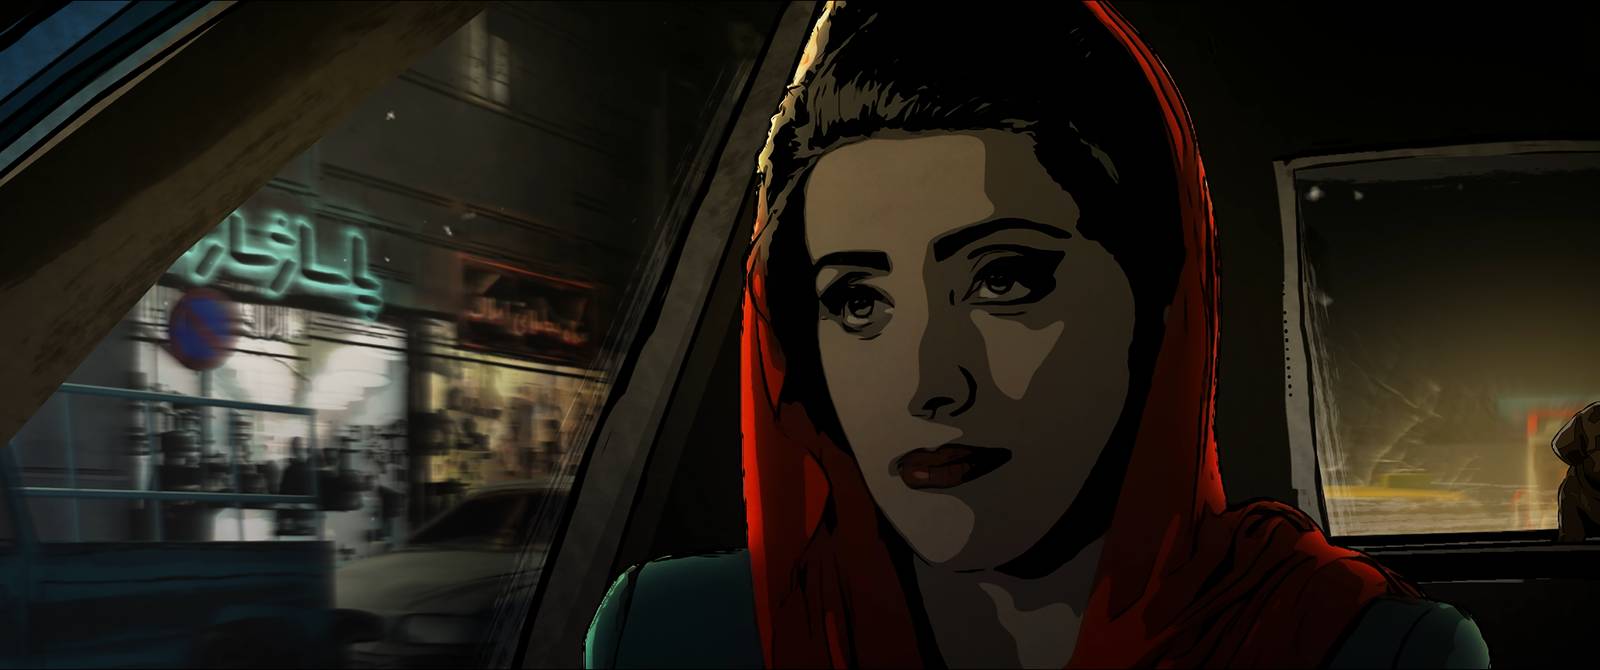 Film Teheránske tabu (2017)